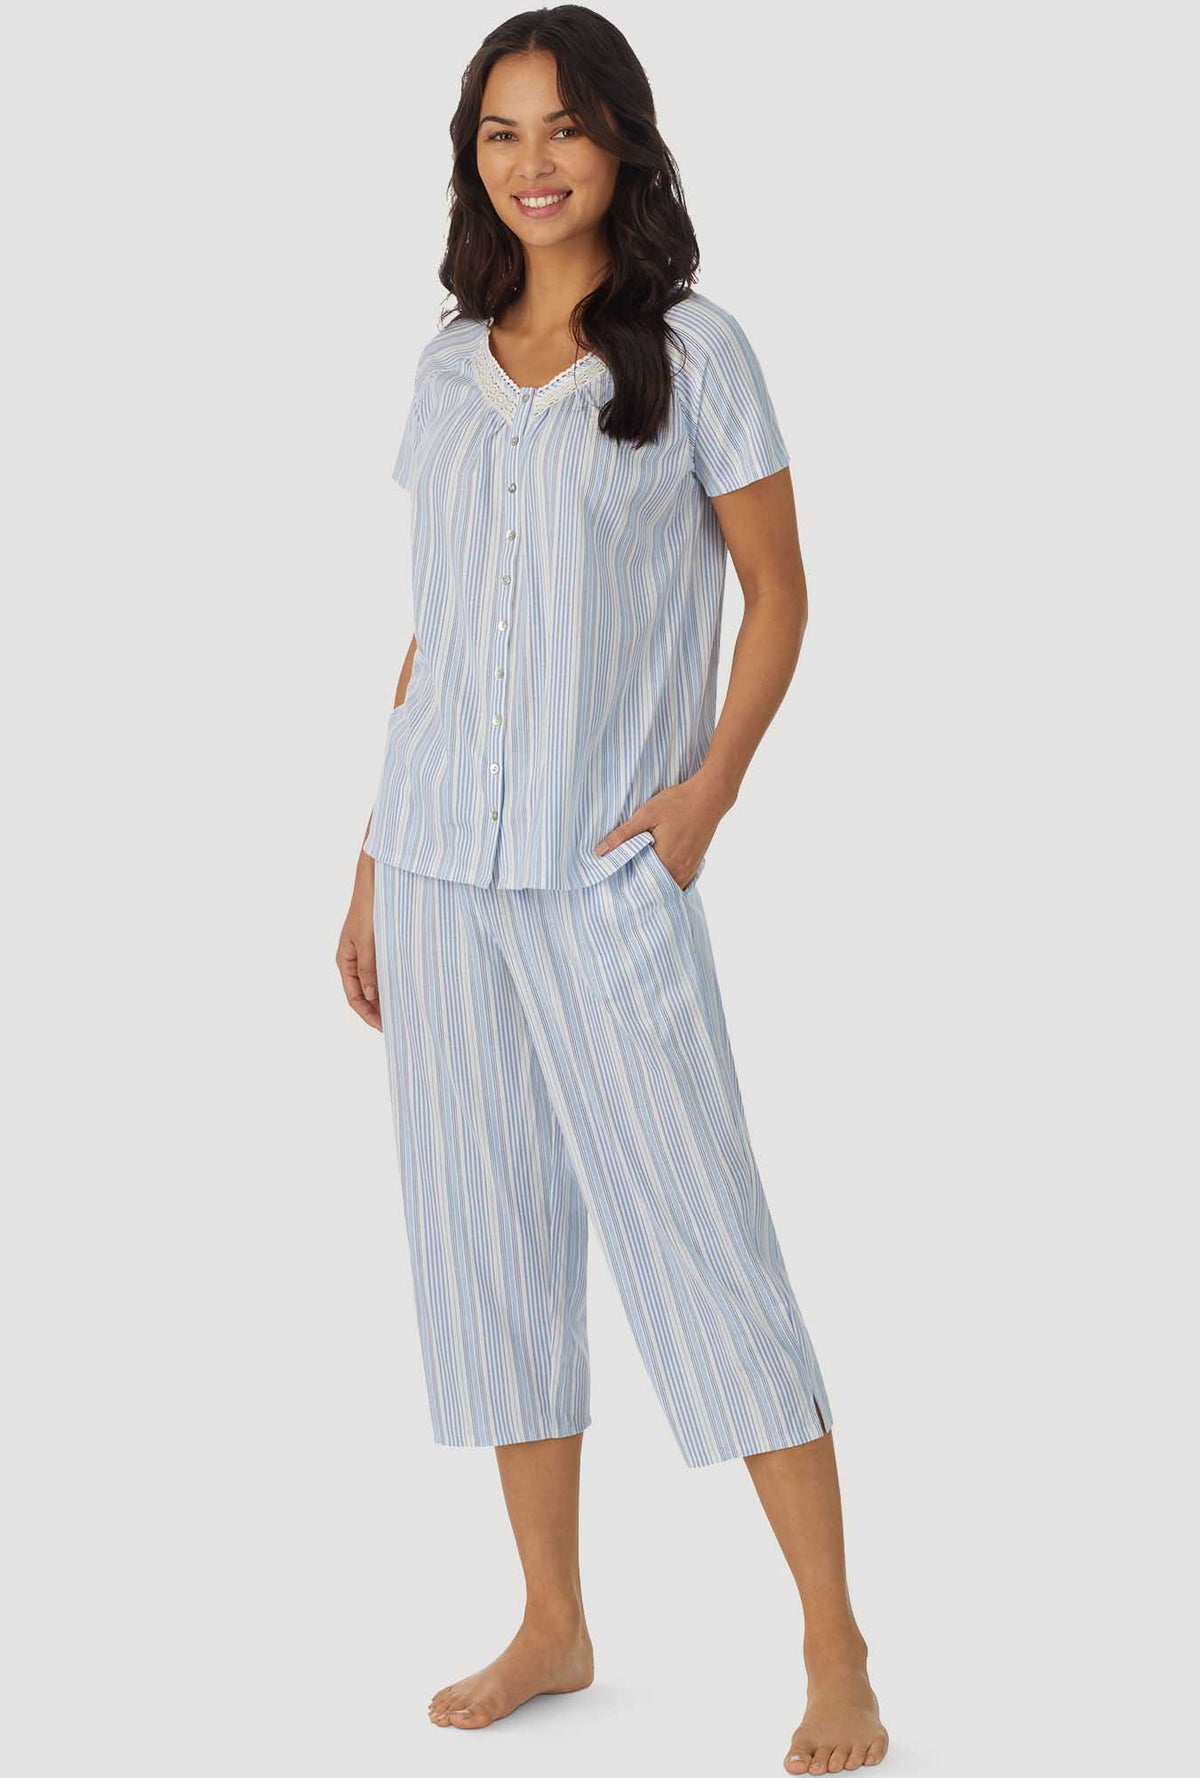 Blue Stripe Short Sleeve Capri Pant PJ Set